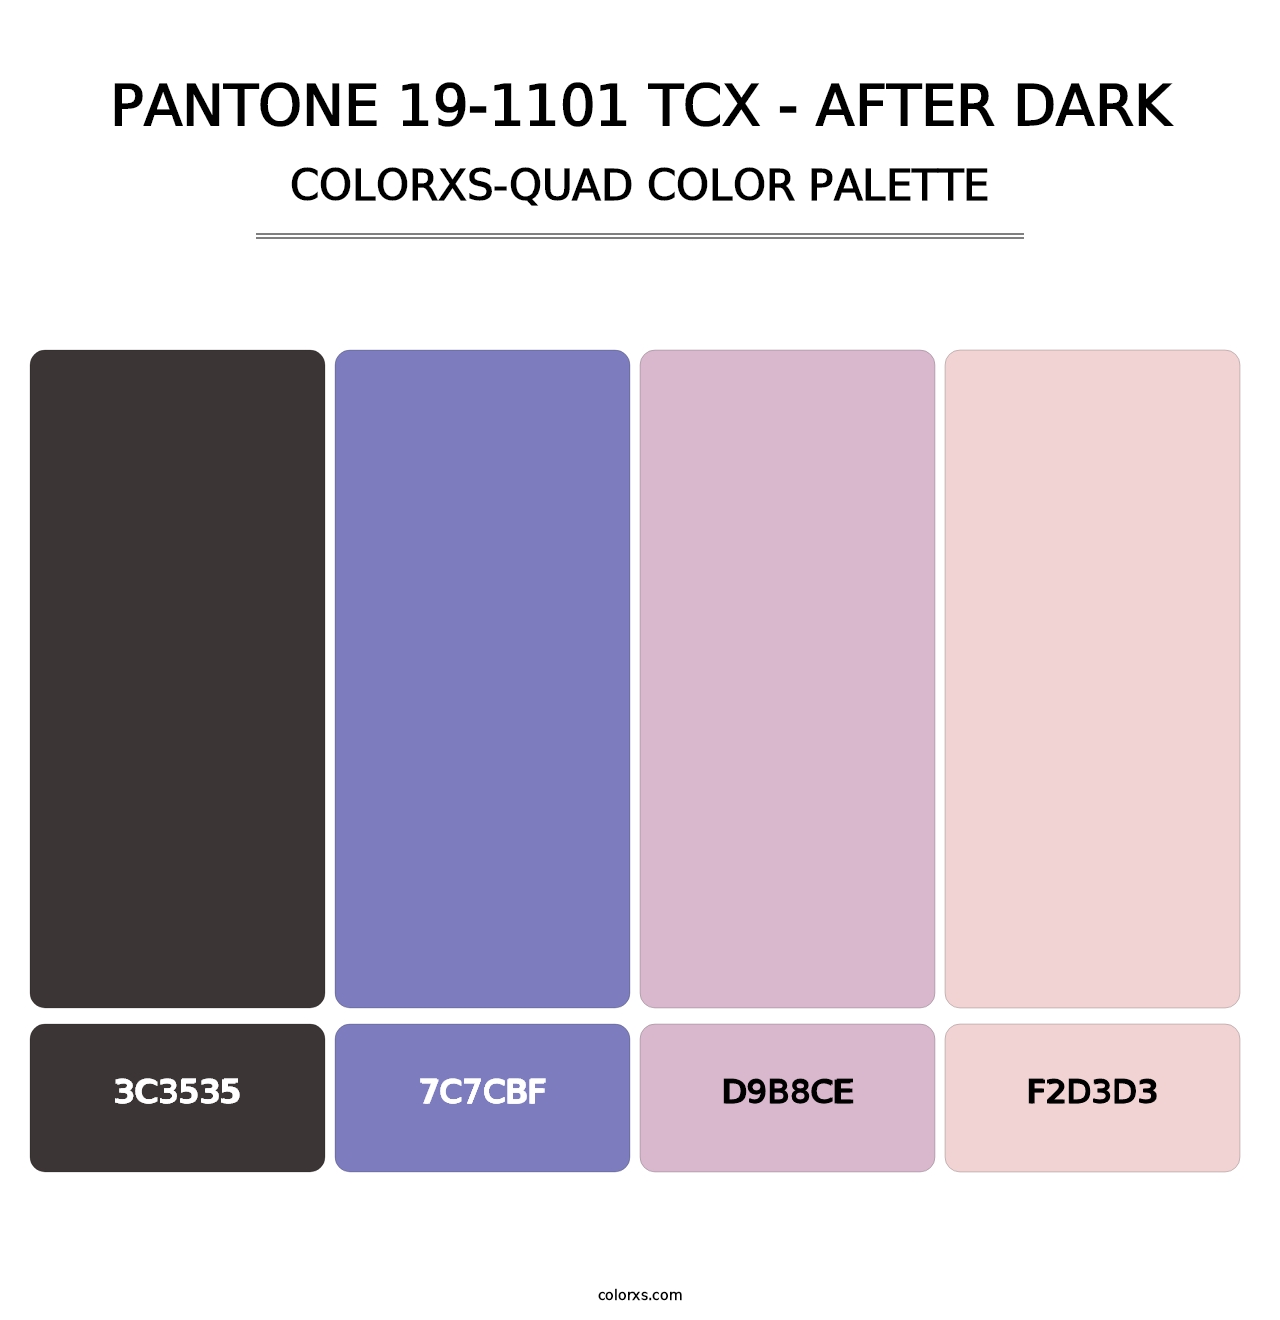 PANTONE 19-1101 TCX - After Dark - Colorxs Quad Palette